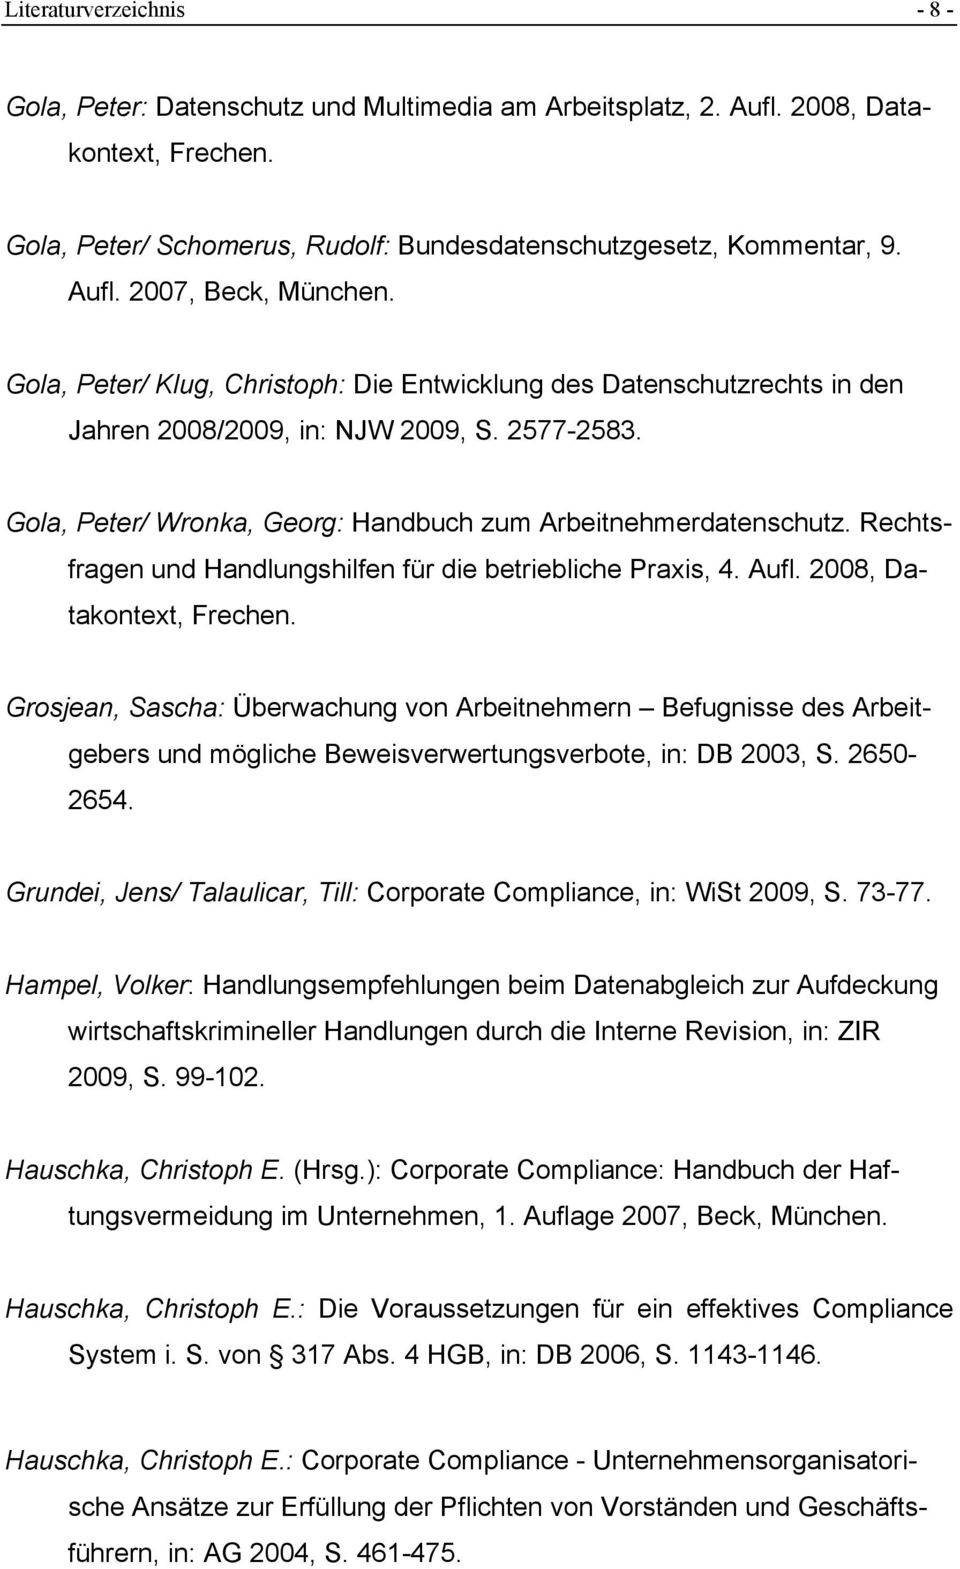 Rechtsfragen und Handlungshilfen für die betriebliche Praxis, 4. Aufl. 2008, Datakontext, Frechen.